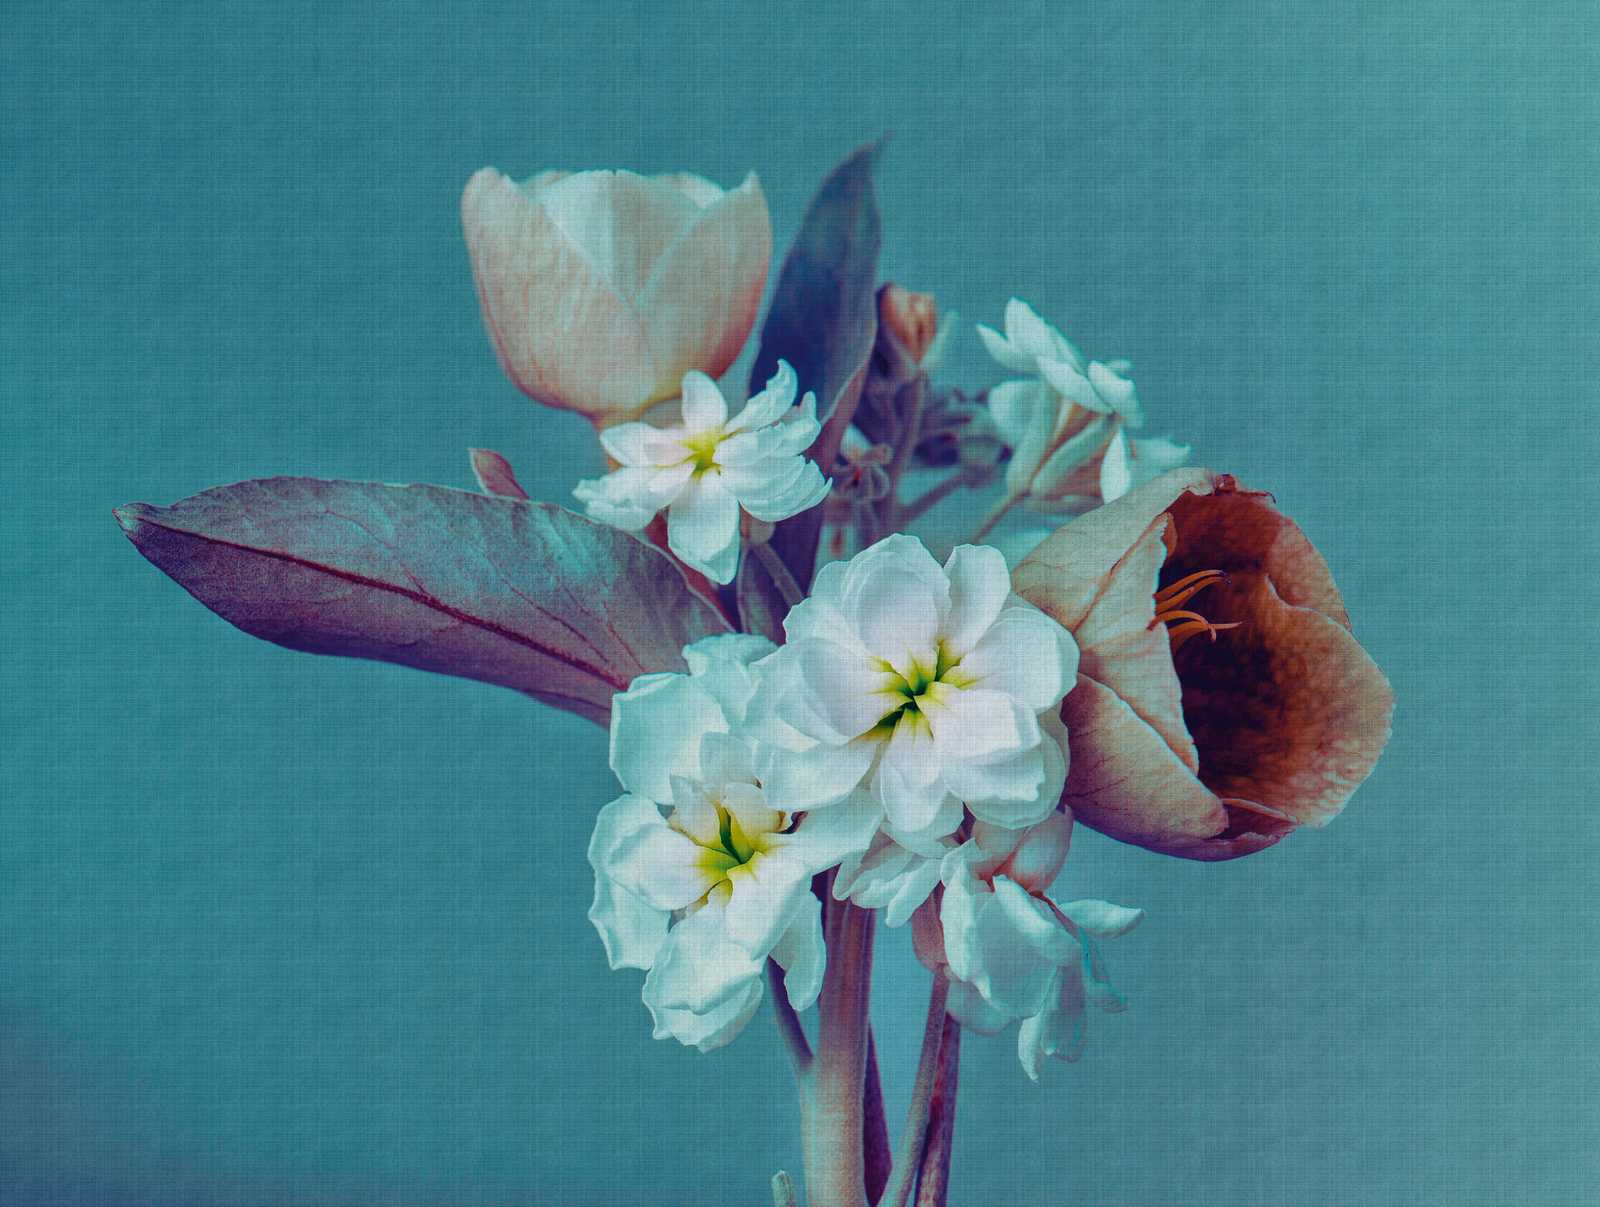             behang-noviteit | bloemen motief behang XXL bloemen, turquoise
        